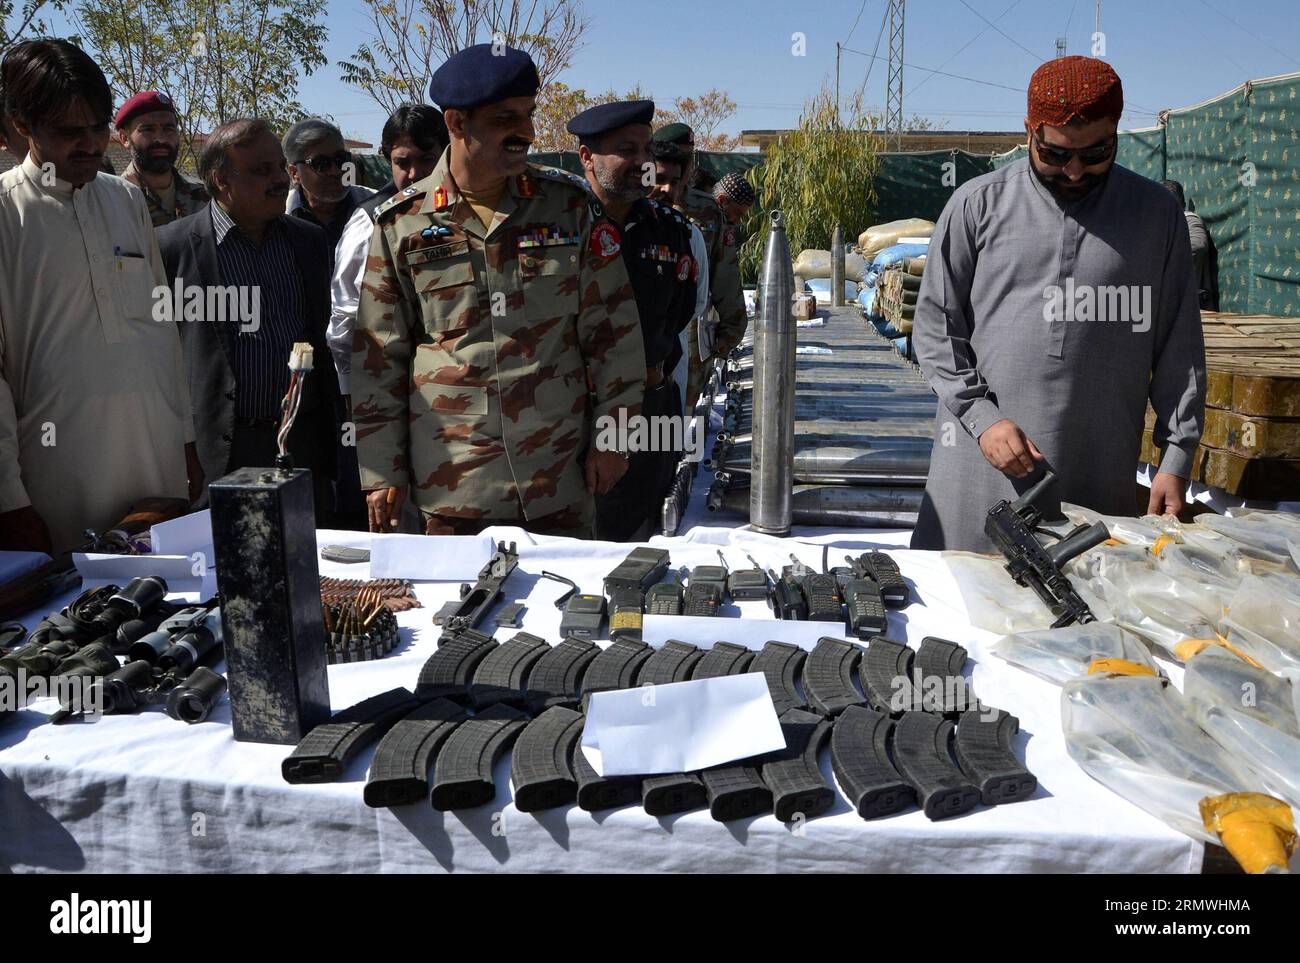 (141030) -- QUETTA, 30 octobre 2014 -- des officiers paramilitaires pakistanais du corps frontalier exposent des matériaux explosifs, des armes et des munitions récupérés lors d'une opération, dans le sud-ouest du Pakistan, à Quetta, le 30 octobre 2014. Frontier corps (FC) a déjoué une tentative terroriste majeure devant Ashura à Quetta jeudi en récupérant une énorme cache d'armes et d'explosifs, y compris des gilets suicides, alors qu'un habitant afghan a également été arrêté.) PAKISTAN-QUETTA-EXPLOSIFS-OPÉRATION-PRÉVENTION Asad PUBLICATIONxNOTxINxCHN Quetta OCT 30 2014 les officiers paramilitaires pakistanais du corps frontalier affichent explosif Ma Banque D'Images